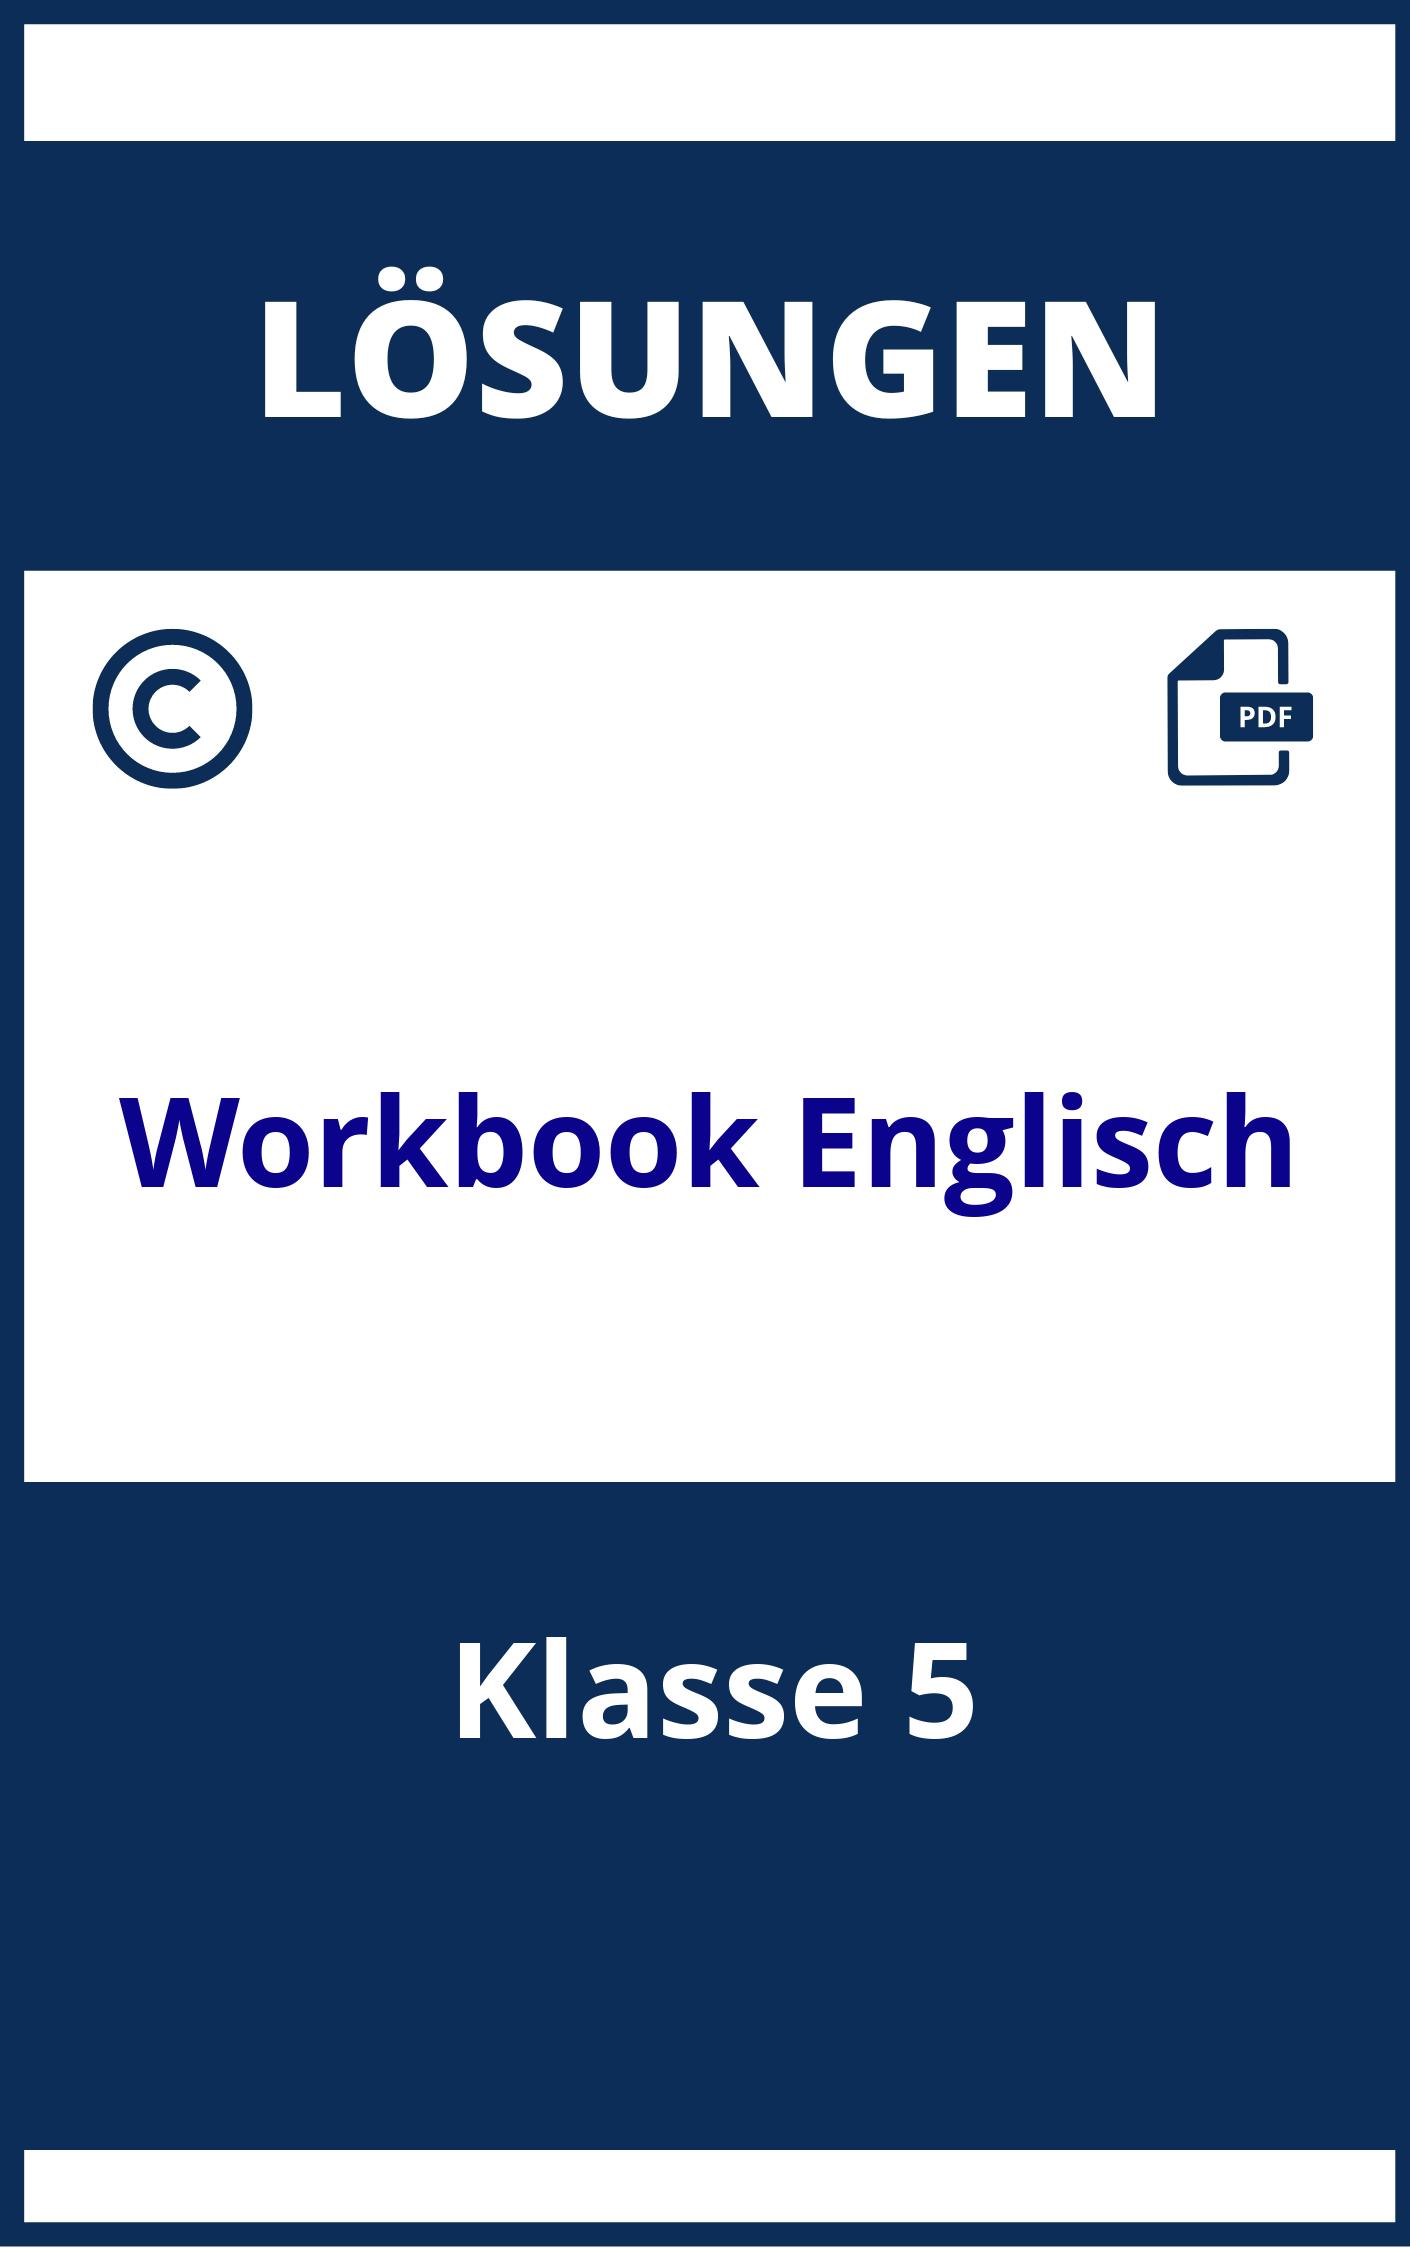 Workbook Englisch Lösungen Klasse 5